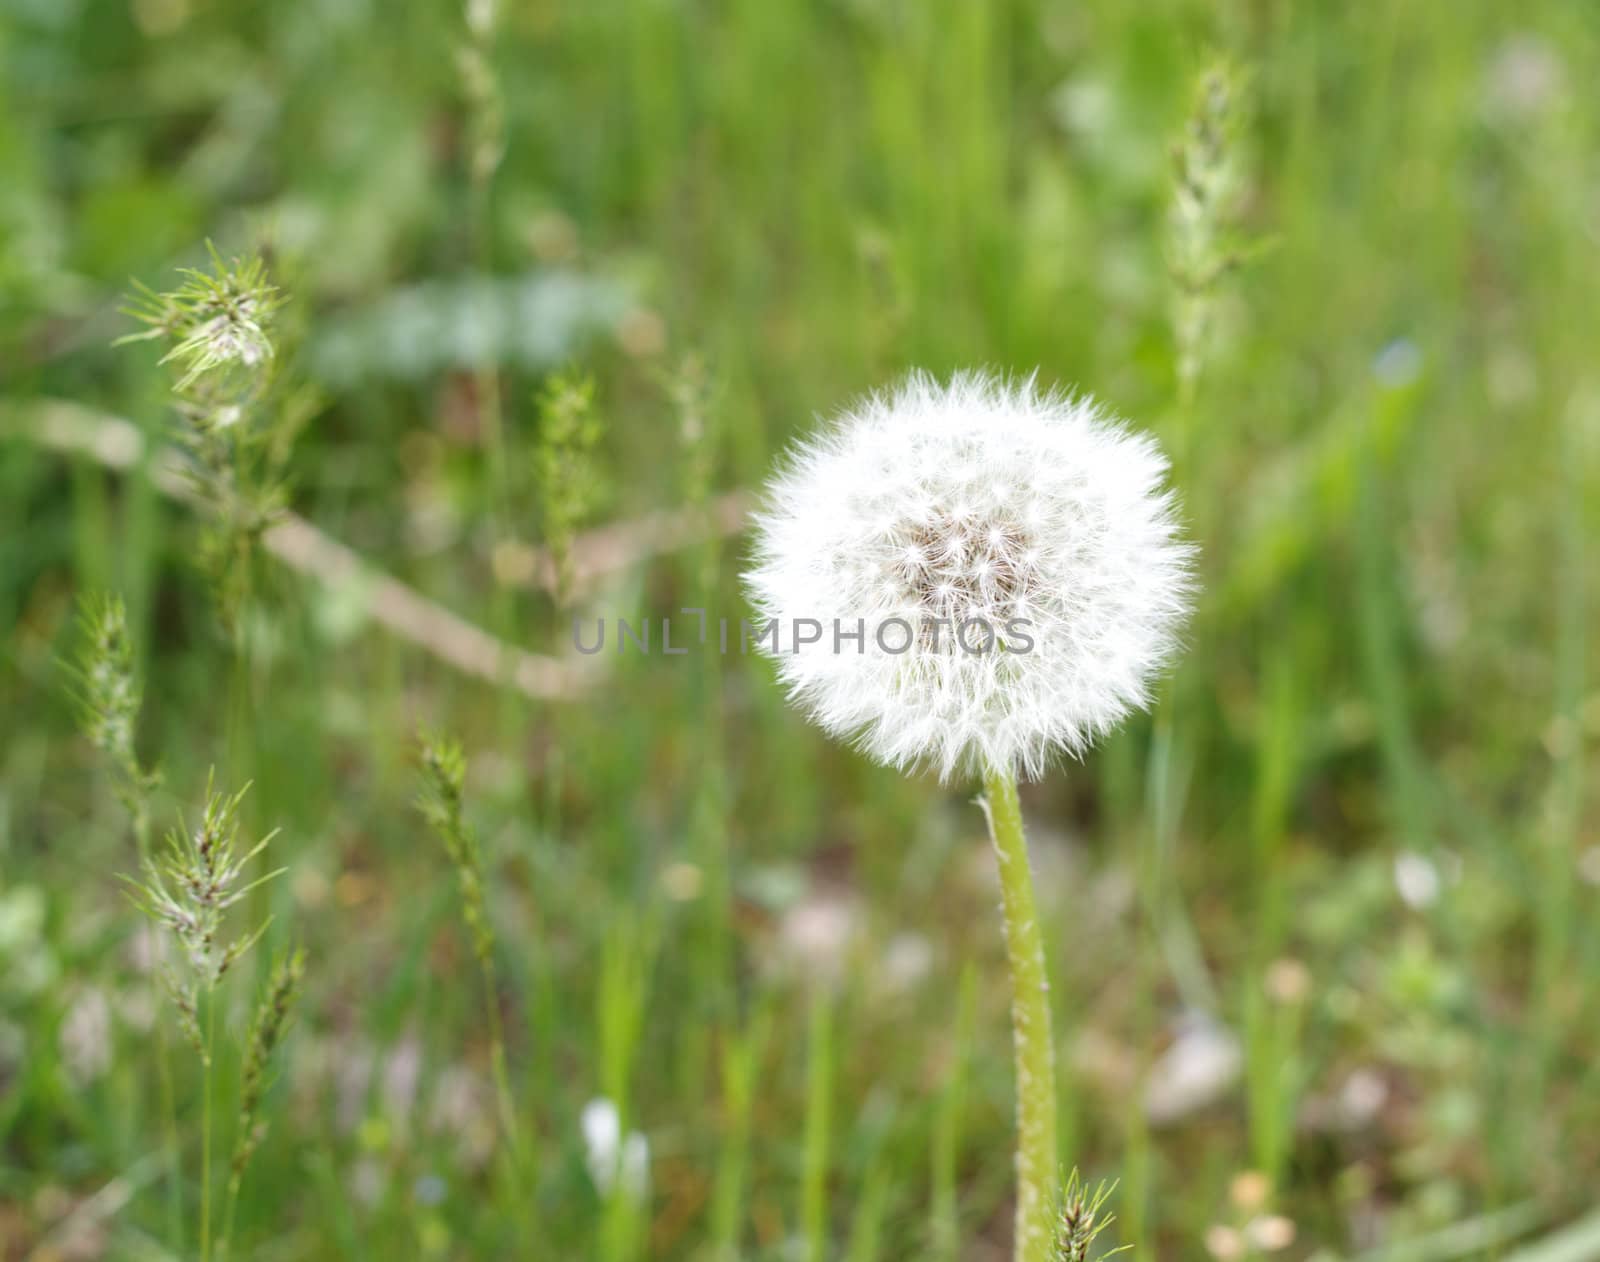 	
Single dandelion flower in a green grass